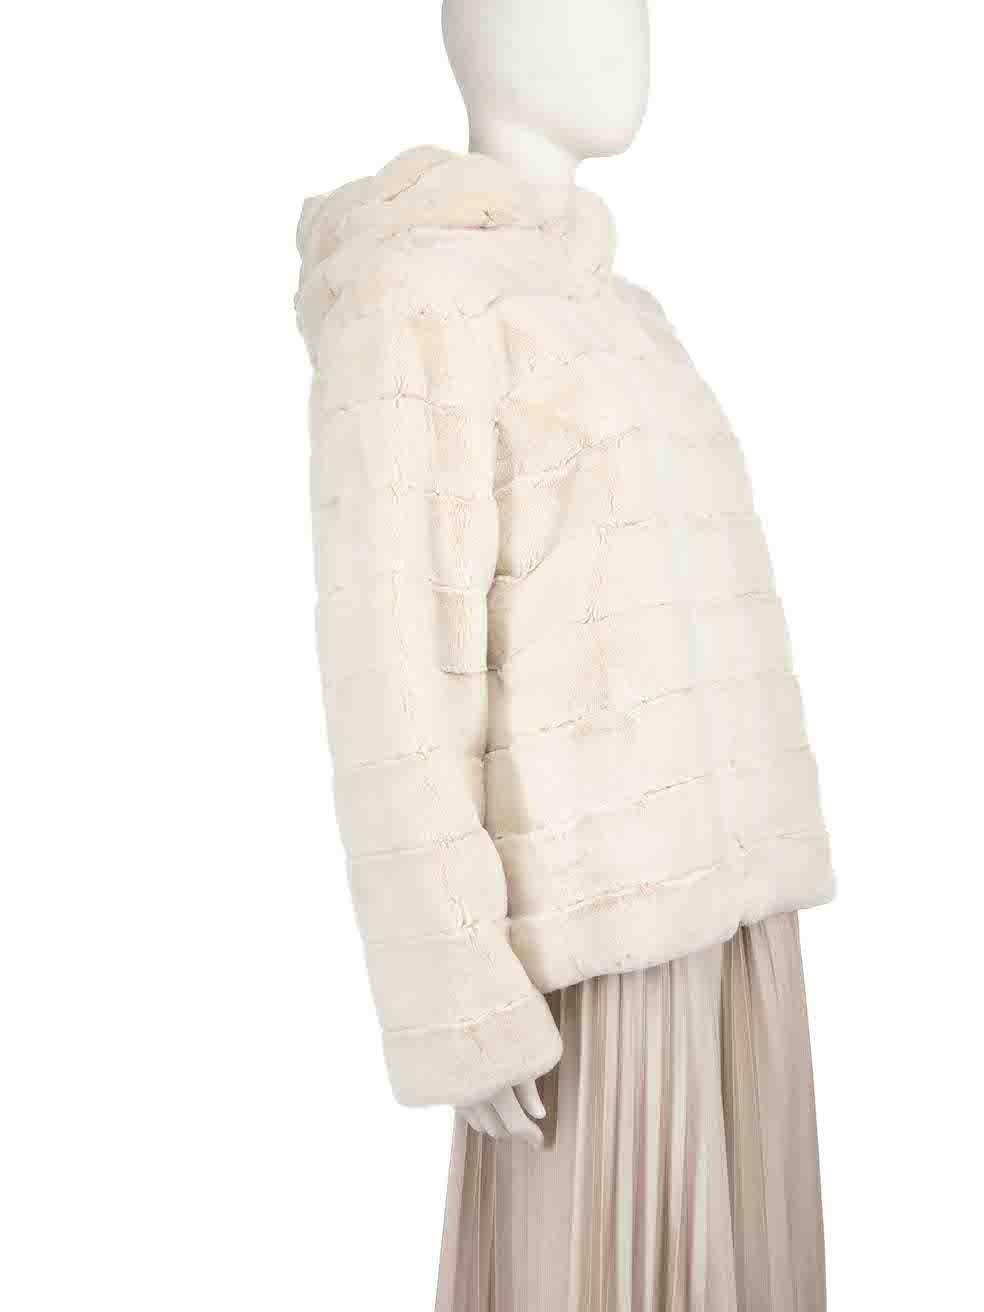 CONDIT ist sehr gut. Der Mantel weist nur minimale Abnutzung auf. Das Futter dieses gebrauchten Albinea Designer-Wiederverkaufsartikels weist eine kleine Rupfung auf.
 
 Einzelheiten
 Ecru
 Kunstpelz
 Mantel
 Kapuze
 Reißverschluss und